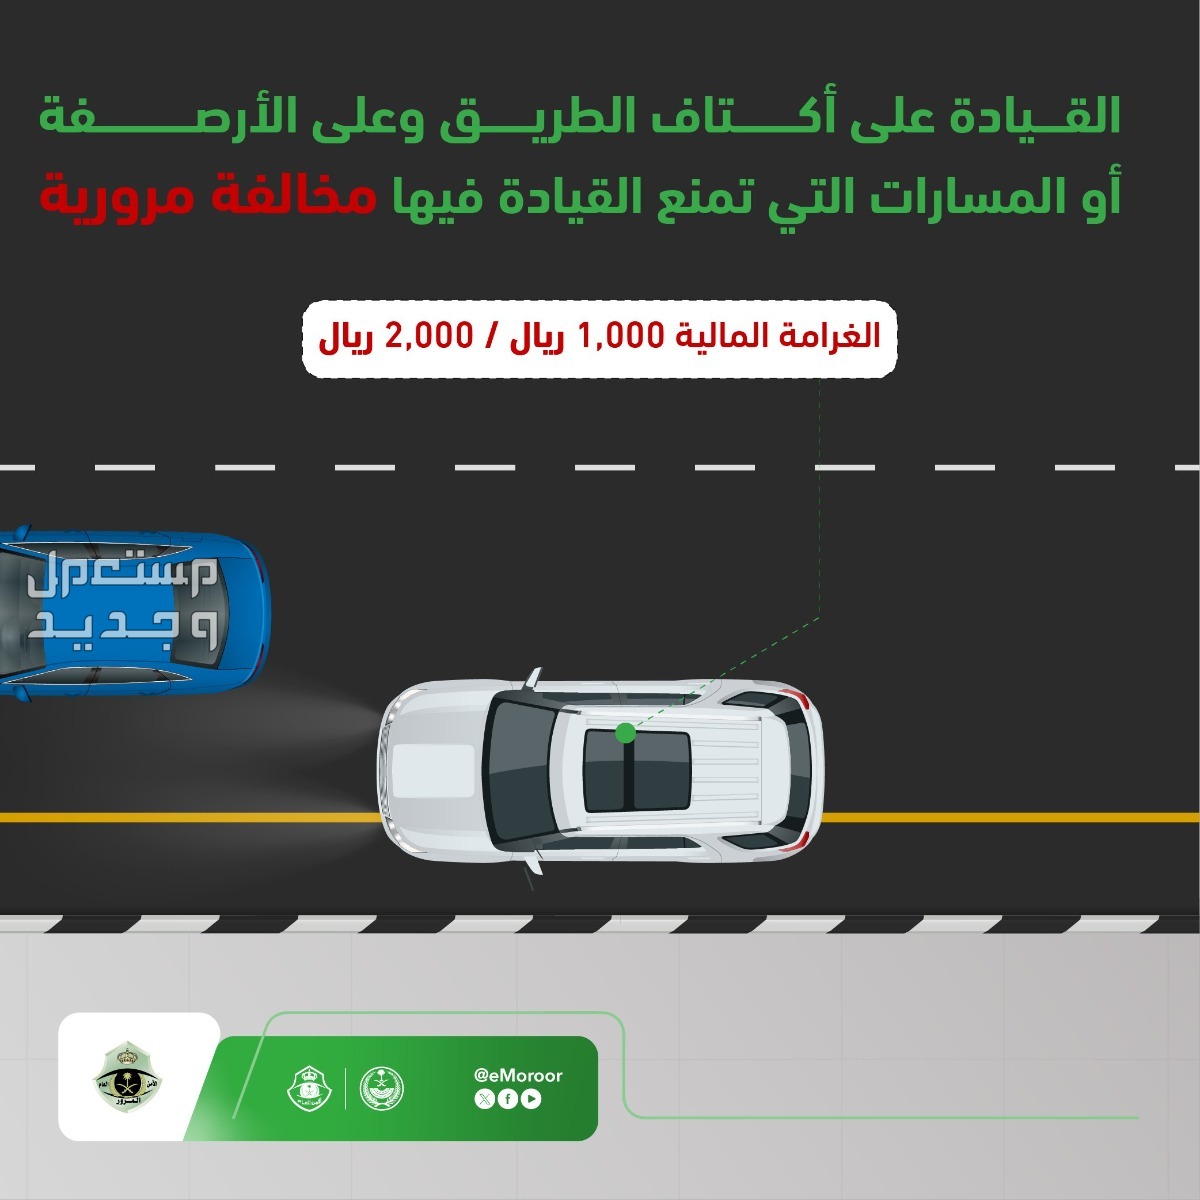 "المرور" يوضح قيمة مخالفة القيادة على الأرصفة والمسارات في عمان مخالفة القيادة على الأرصفة والمسارات